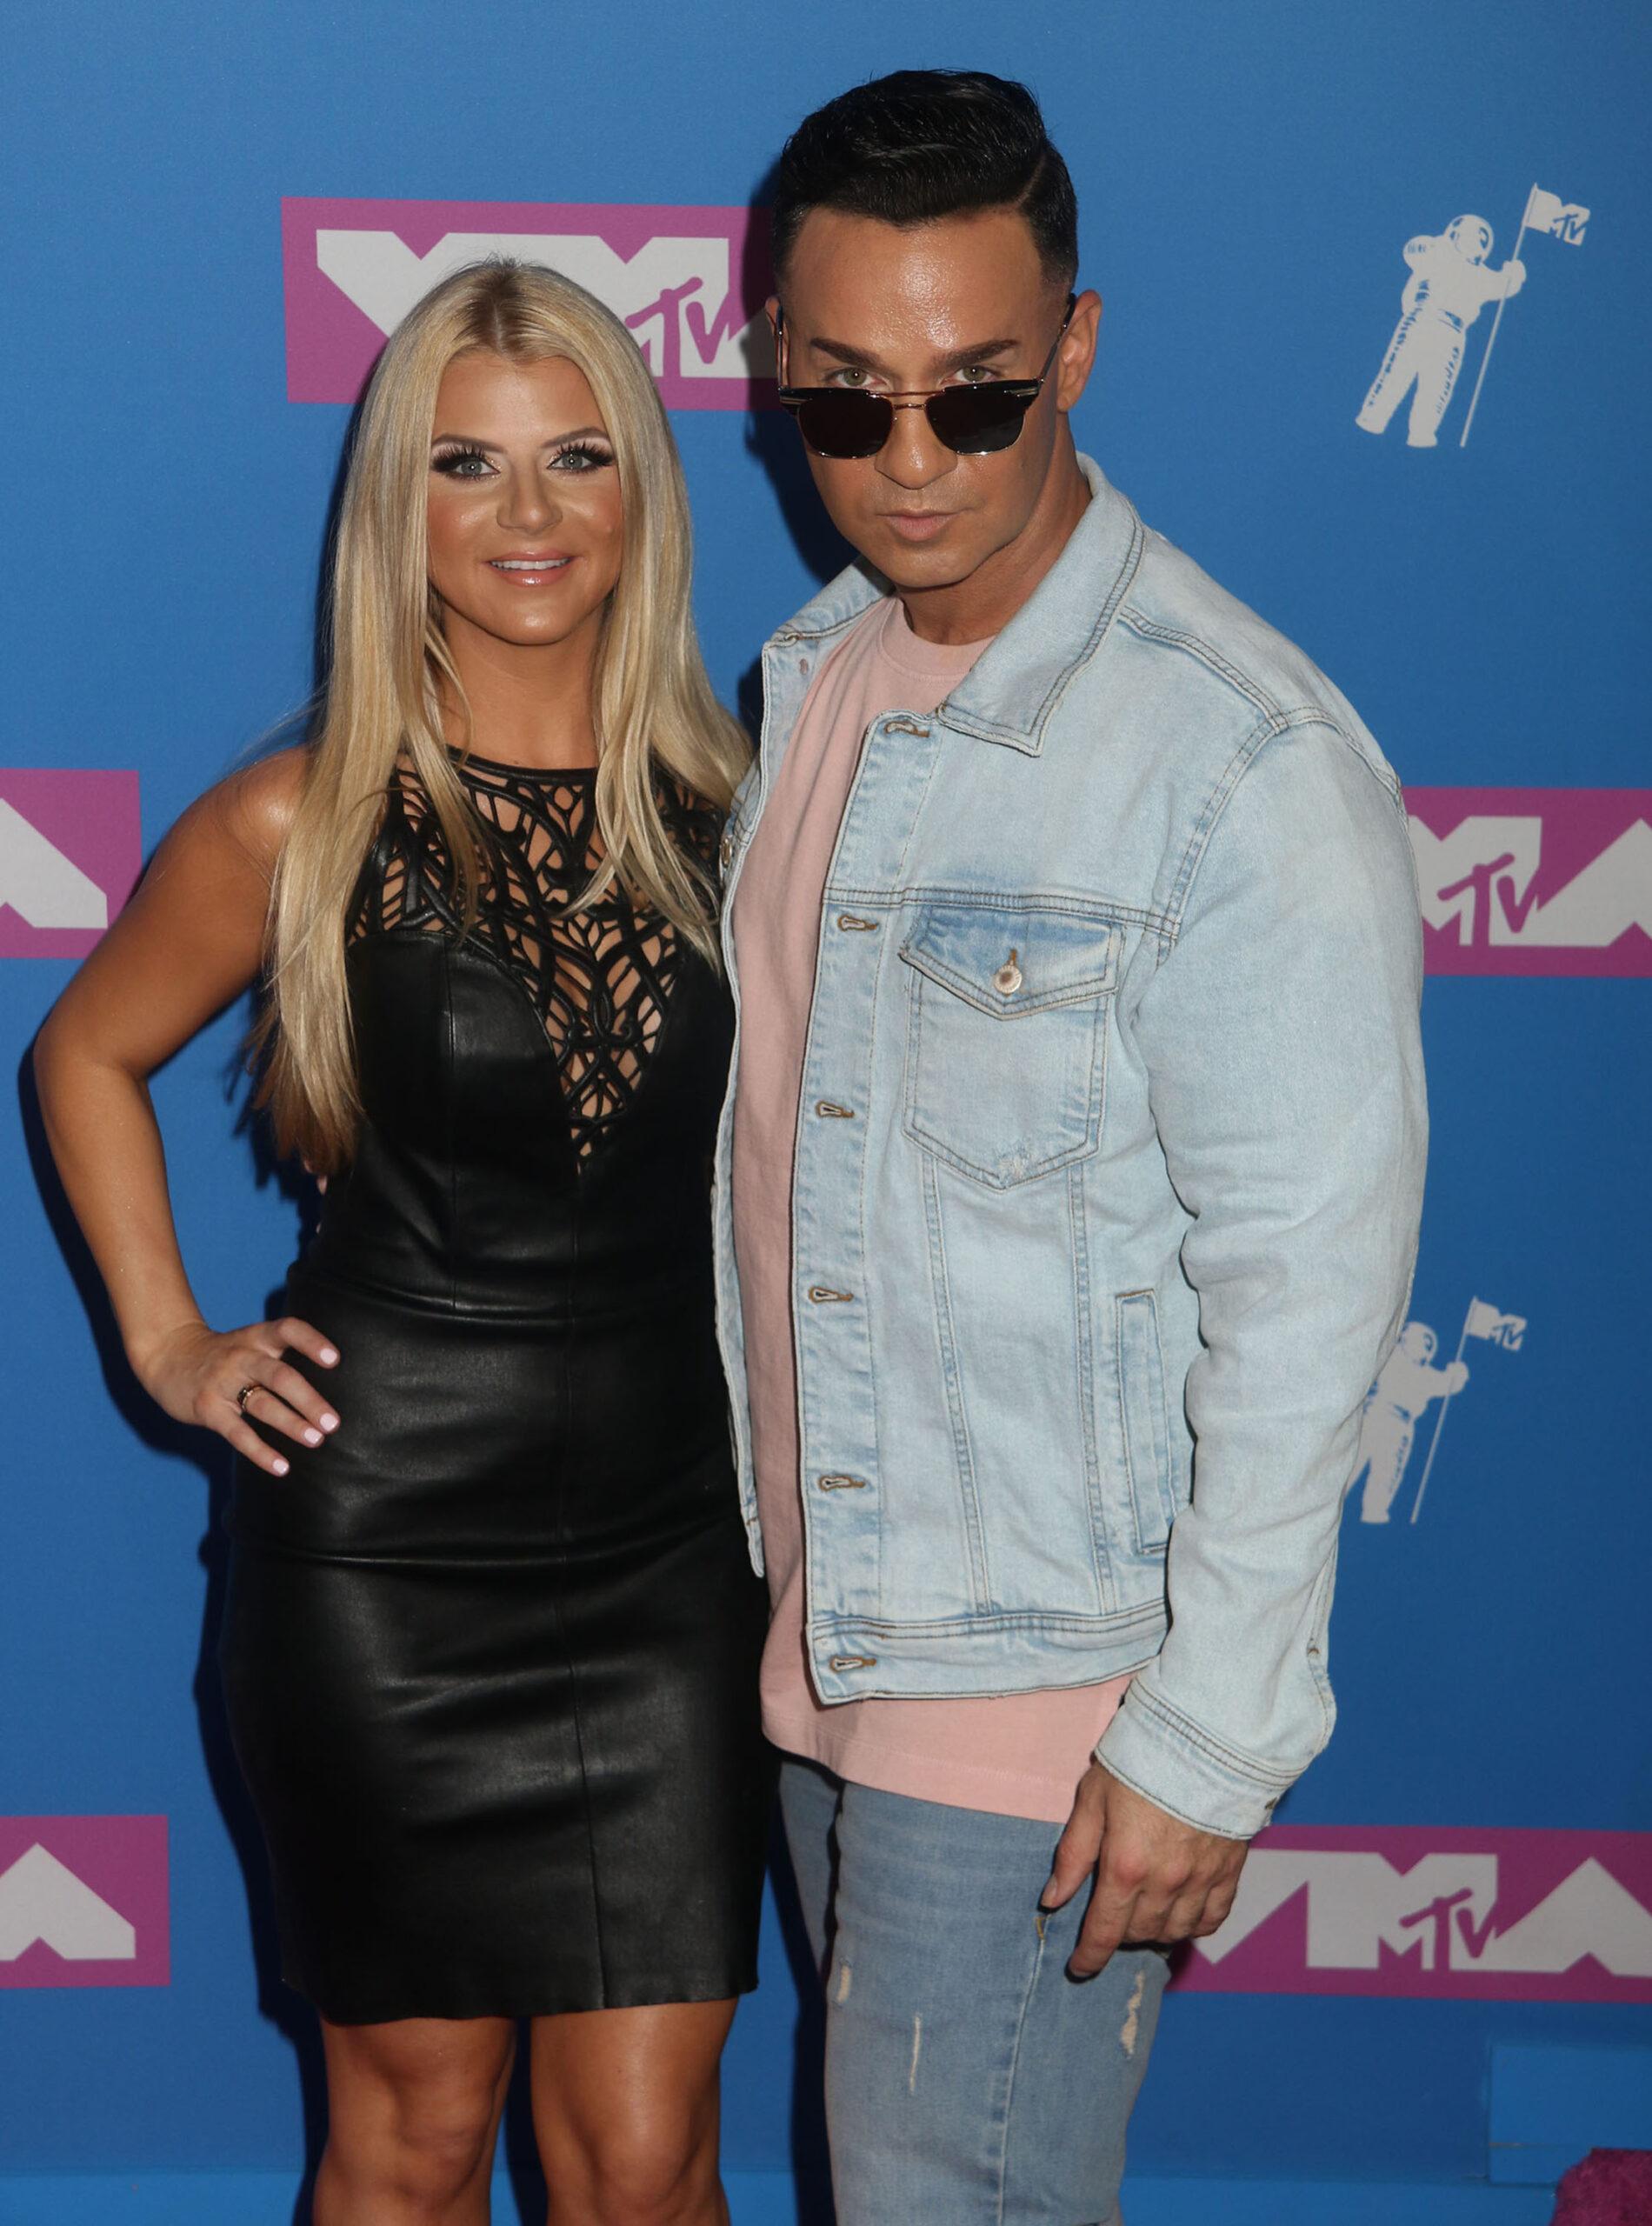 Mike Sorrentino & Wife Lauren at the 2018 MTV 'VMAS'